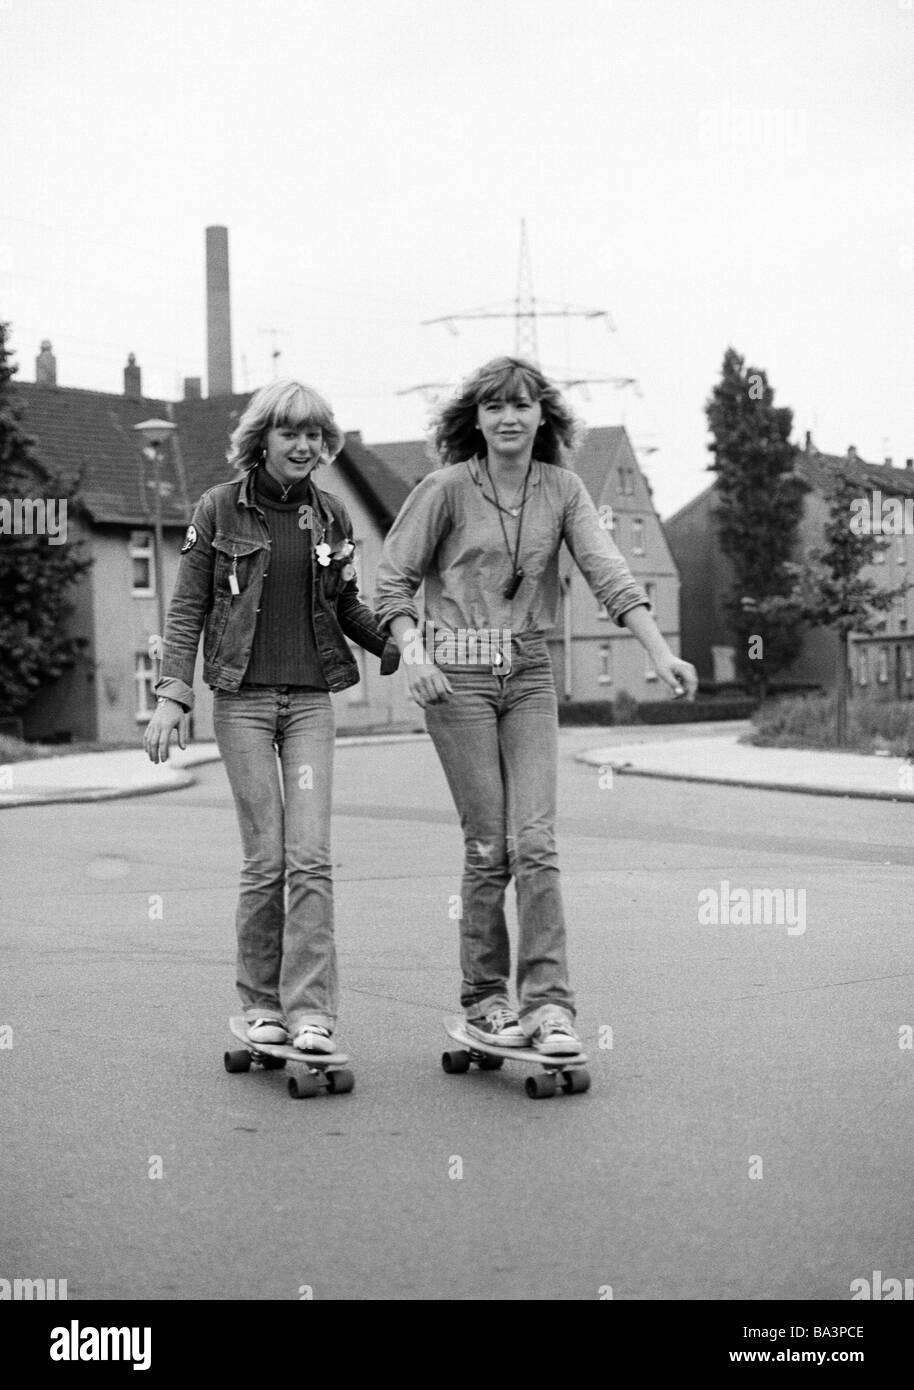 Negli anni settanta, foto in bianco e nero, persone, due giovani ragazze con i pattini guidare su strada, jeans tuta, jeans pantaloni, di età compresa tra 15 a 18 anni Foto Stock